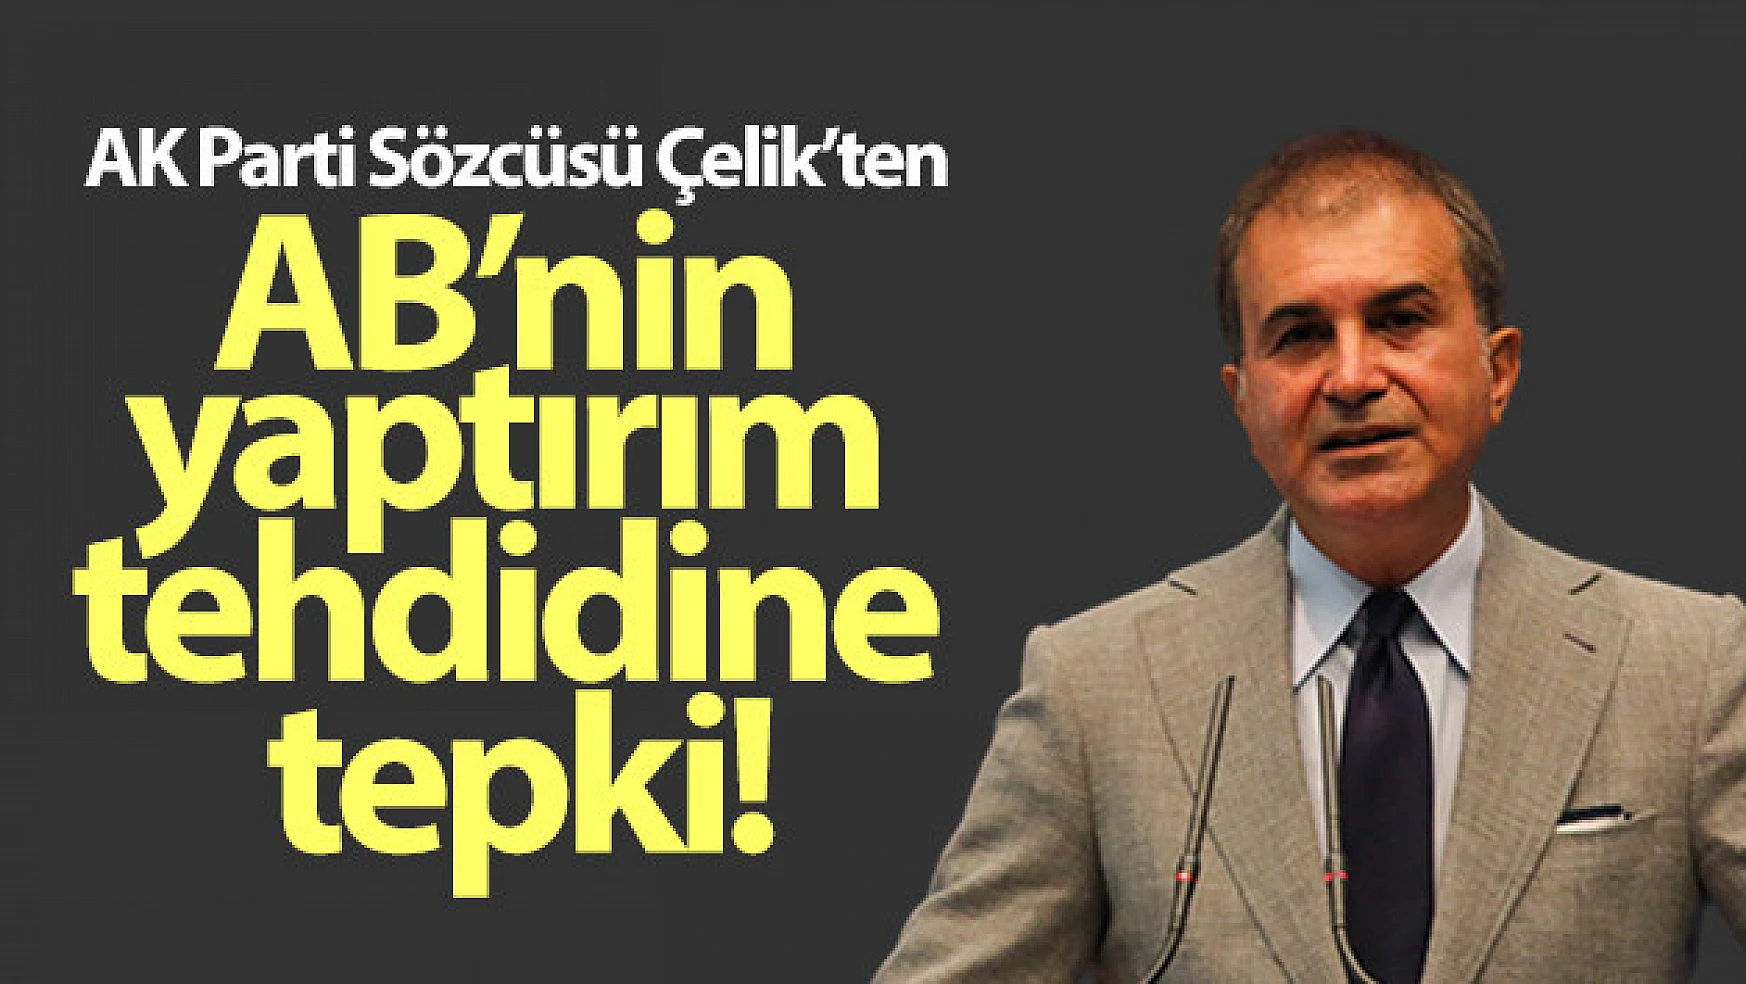 AK Parti Sözcüsü Çelik'ten Avrupa Birliği'nin yaptırım tehdidine tepki